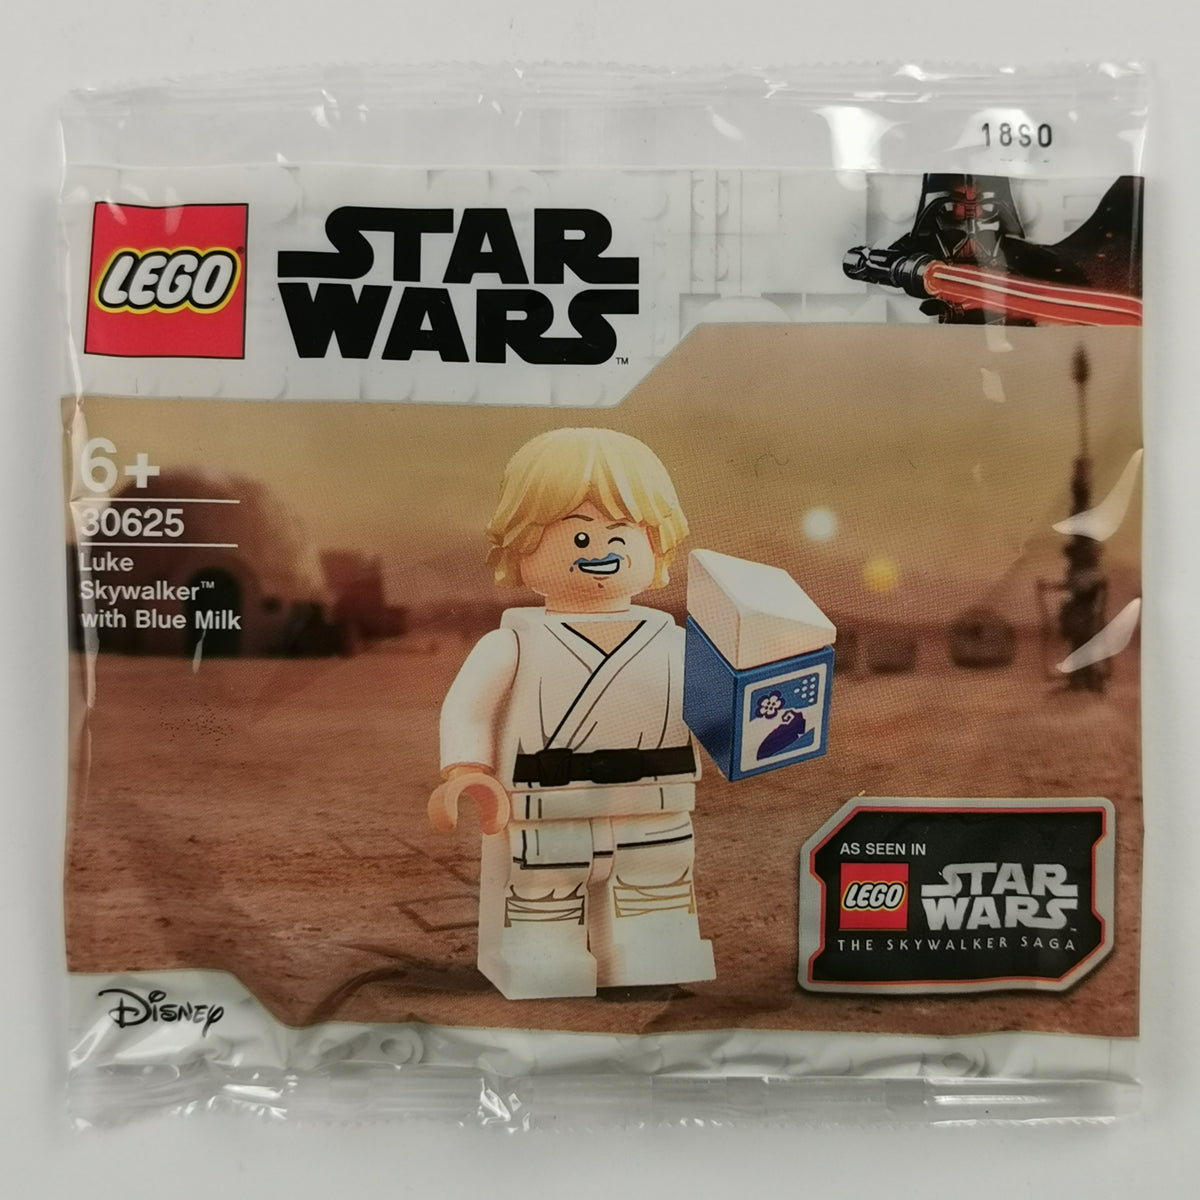 LEGO 30625 Star Wars Luke Skywalker